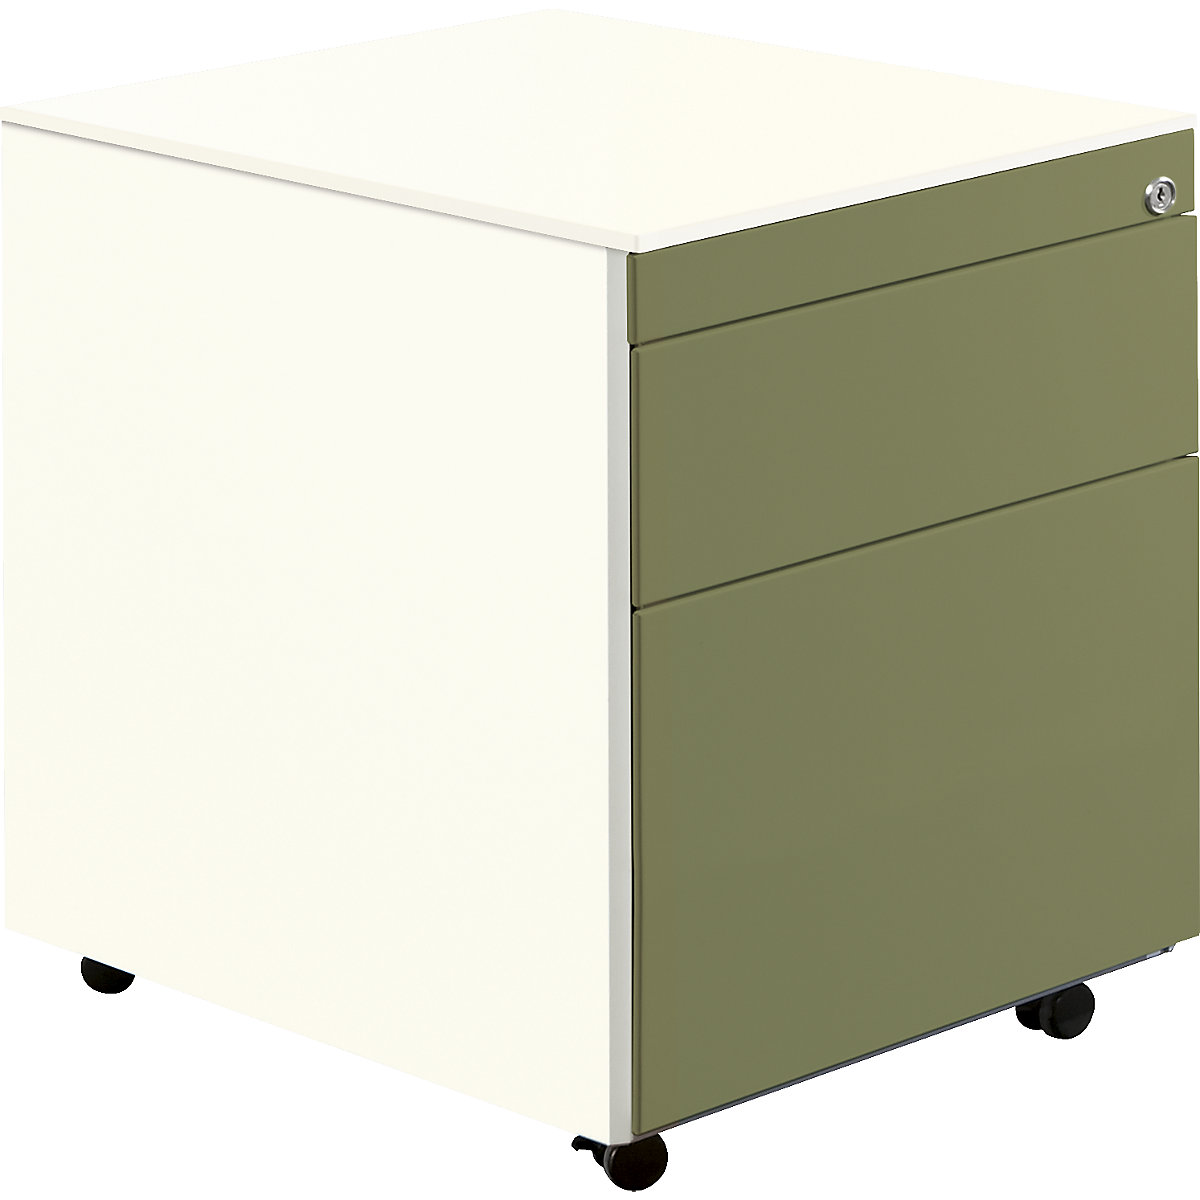 Casetieră cu sertare cu role – mauser, î. x ad. 570 x 600 mm, 1 sertar pentru materiale, 1 registratură suspendată, alb pur / verde stuf / alb pur